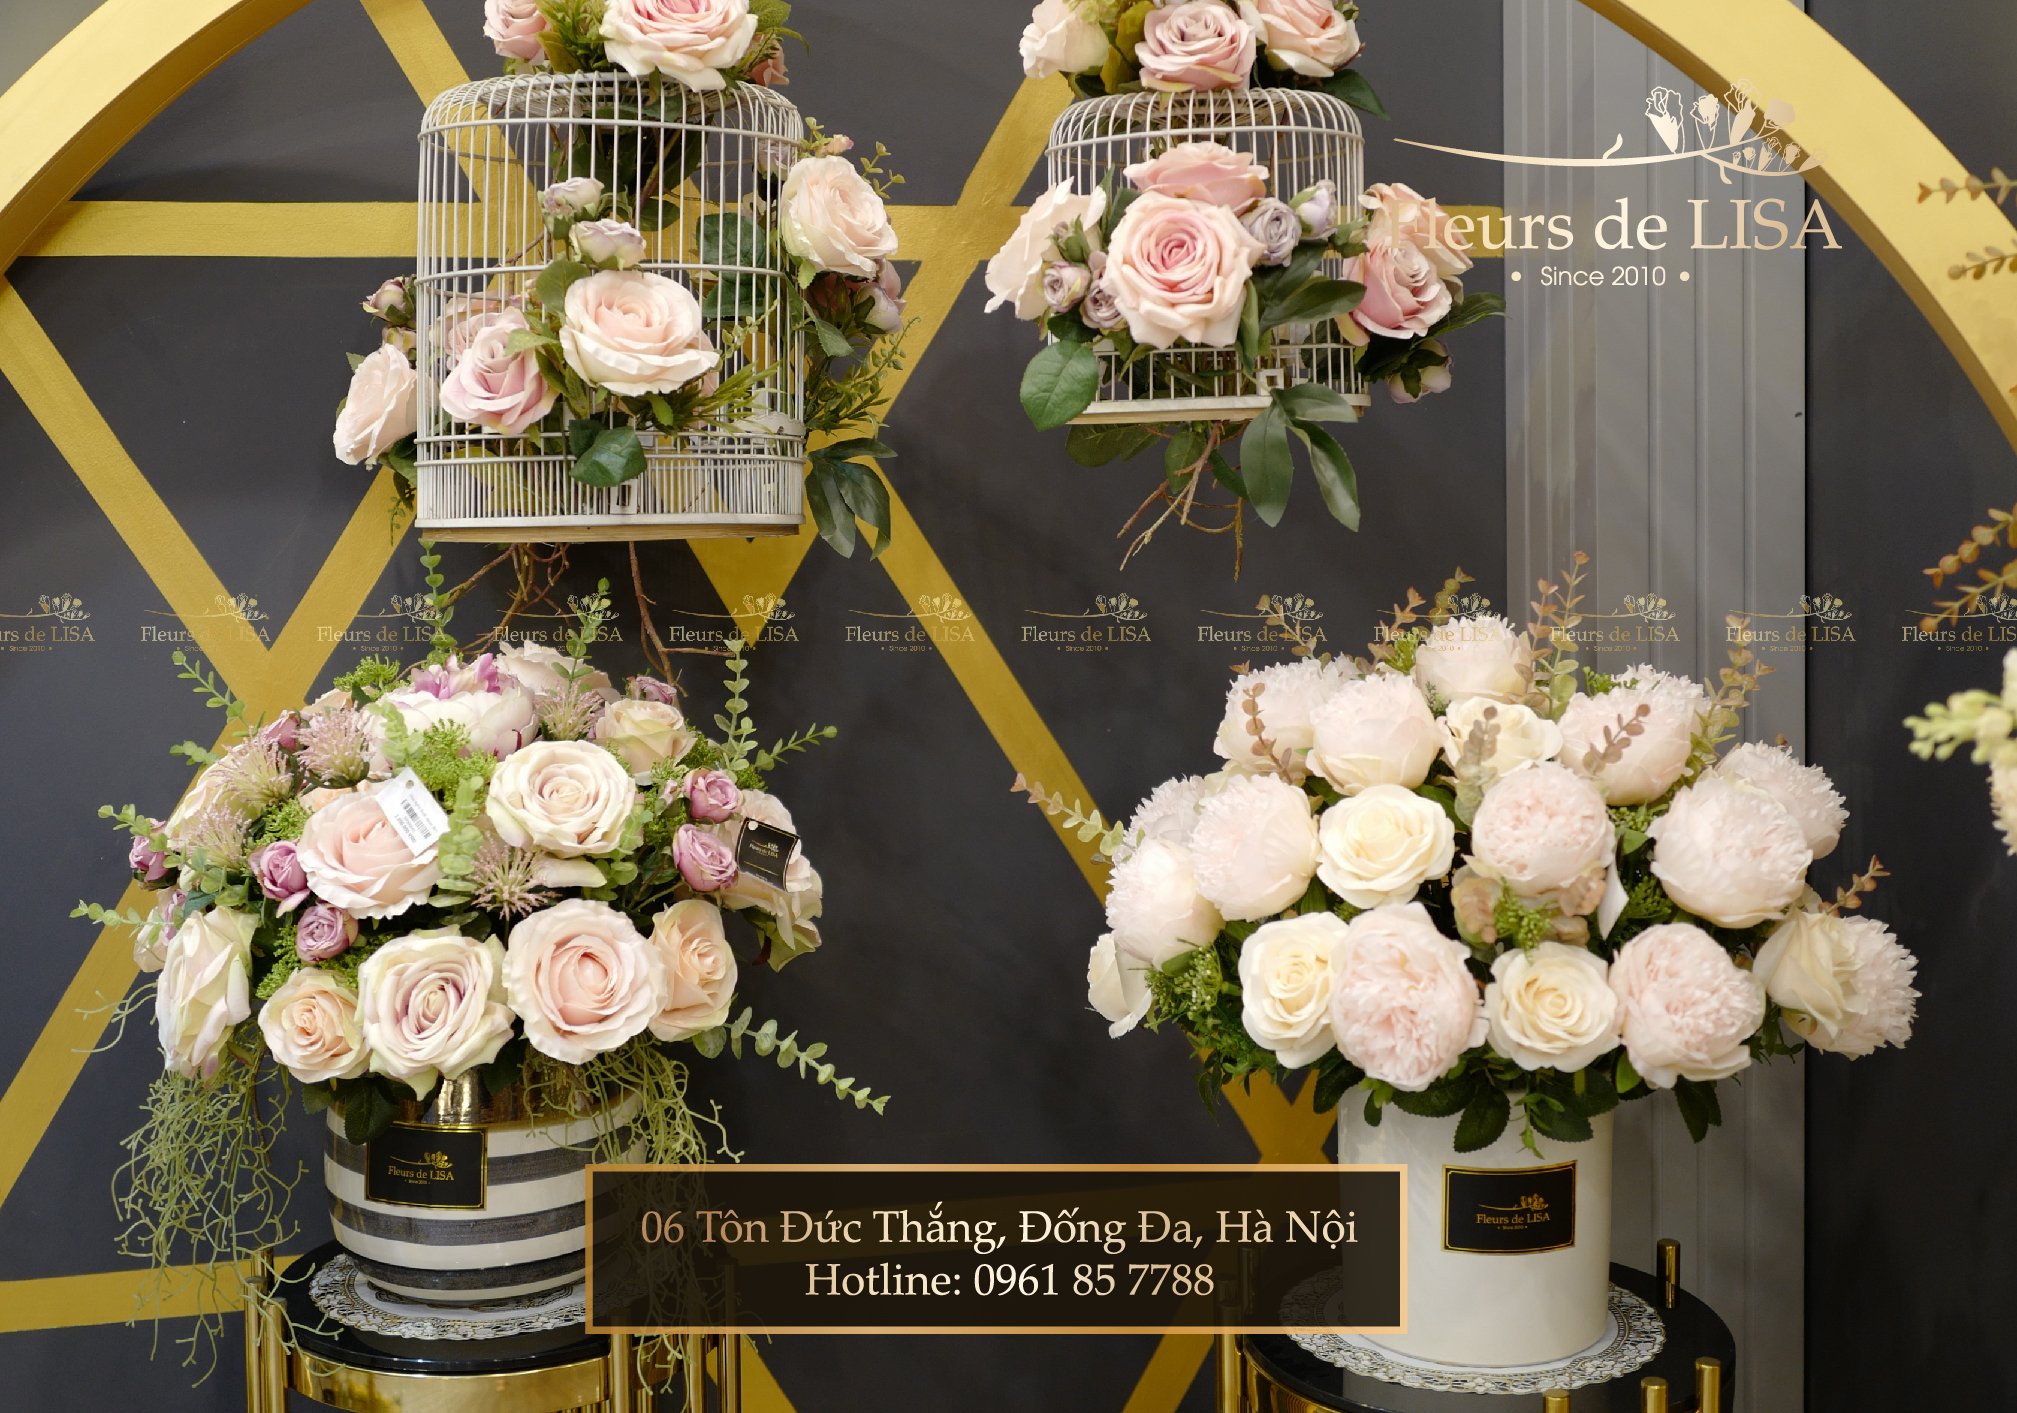 Trang trí văn phòng với các mẫu hoa hồng lụa đẹp nhất đến từ Fleurs de LISA